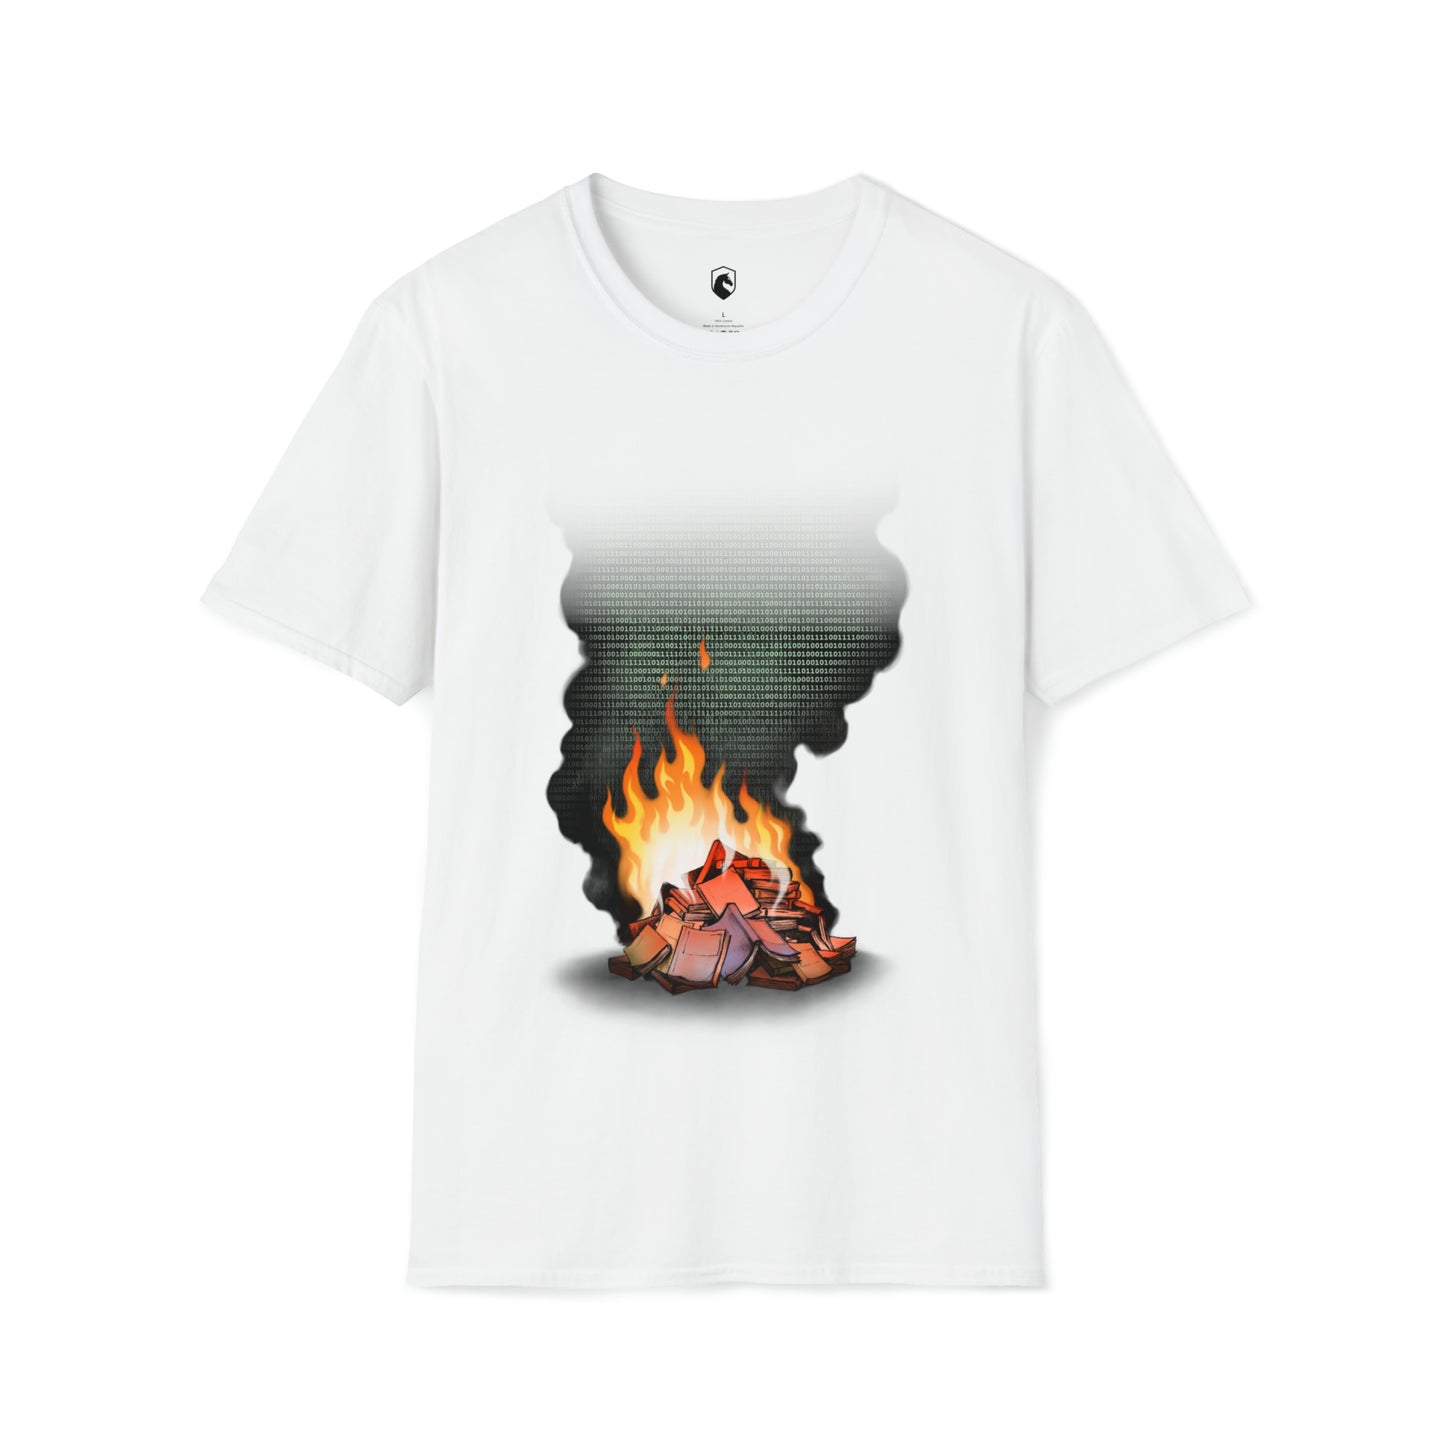 Digital Book Burning T-Shirt - Unisex